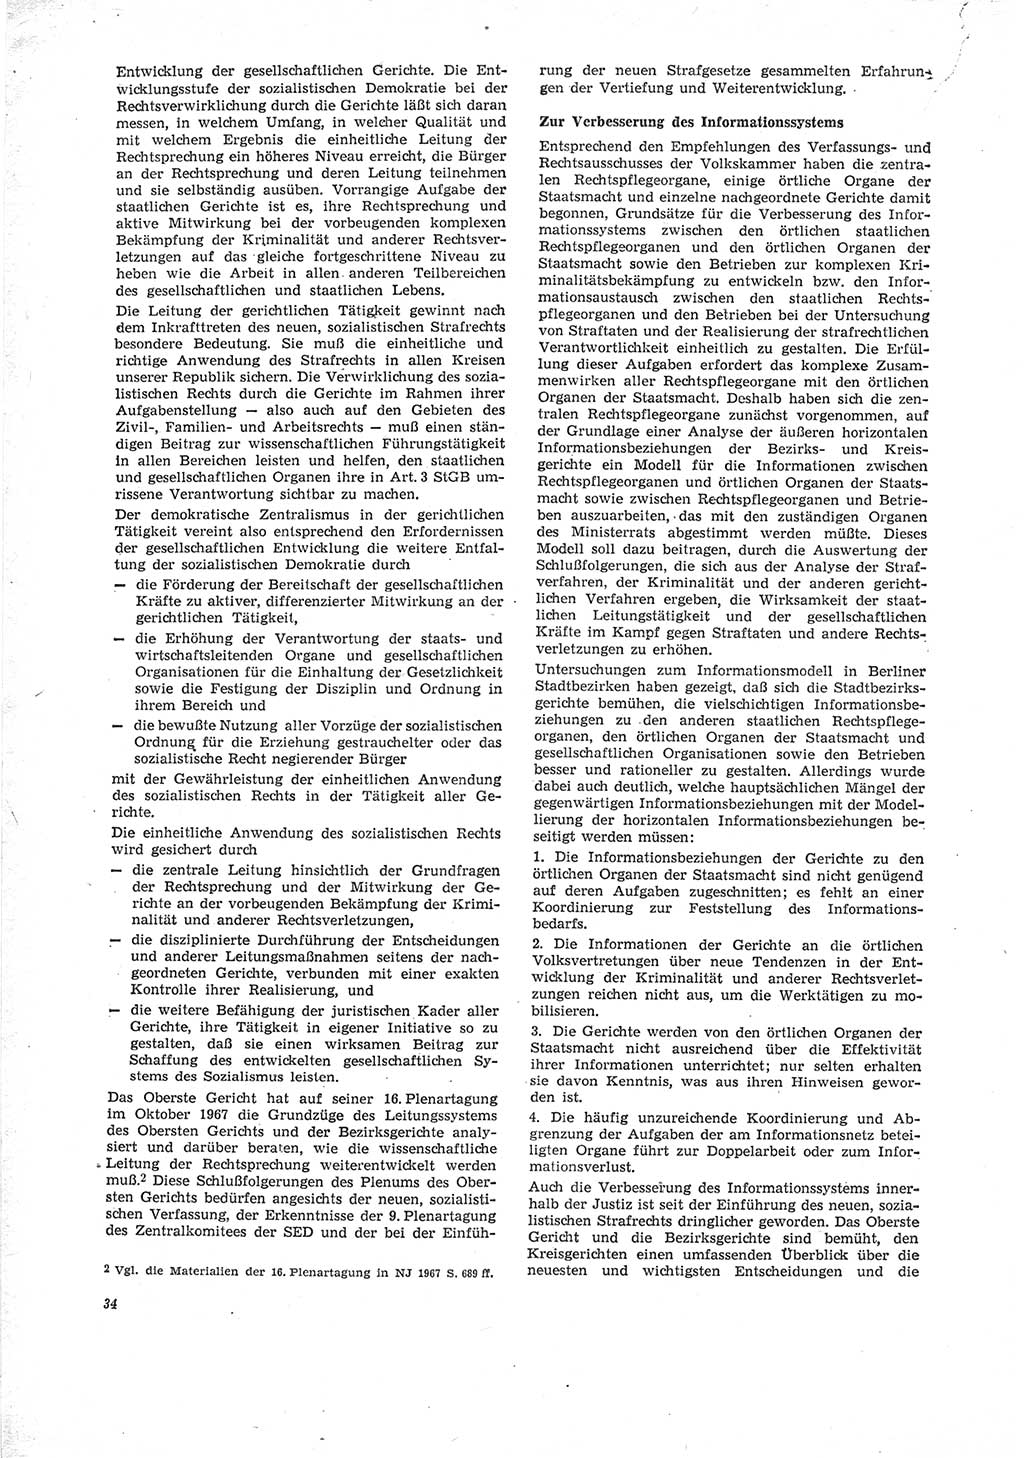 Neue Justiz (NJ), Zeitschrift für Recht und Rechtswissenschaft [Deutsche Demokratische Republik (DDR)], 23. Jahrgang 1969, Seite 34 (NJ DDR 1969, S. 34)